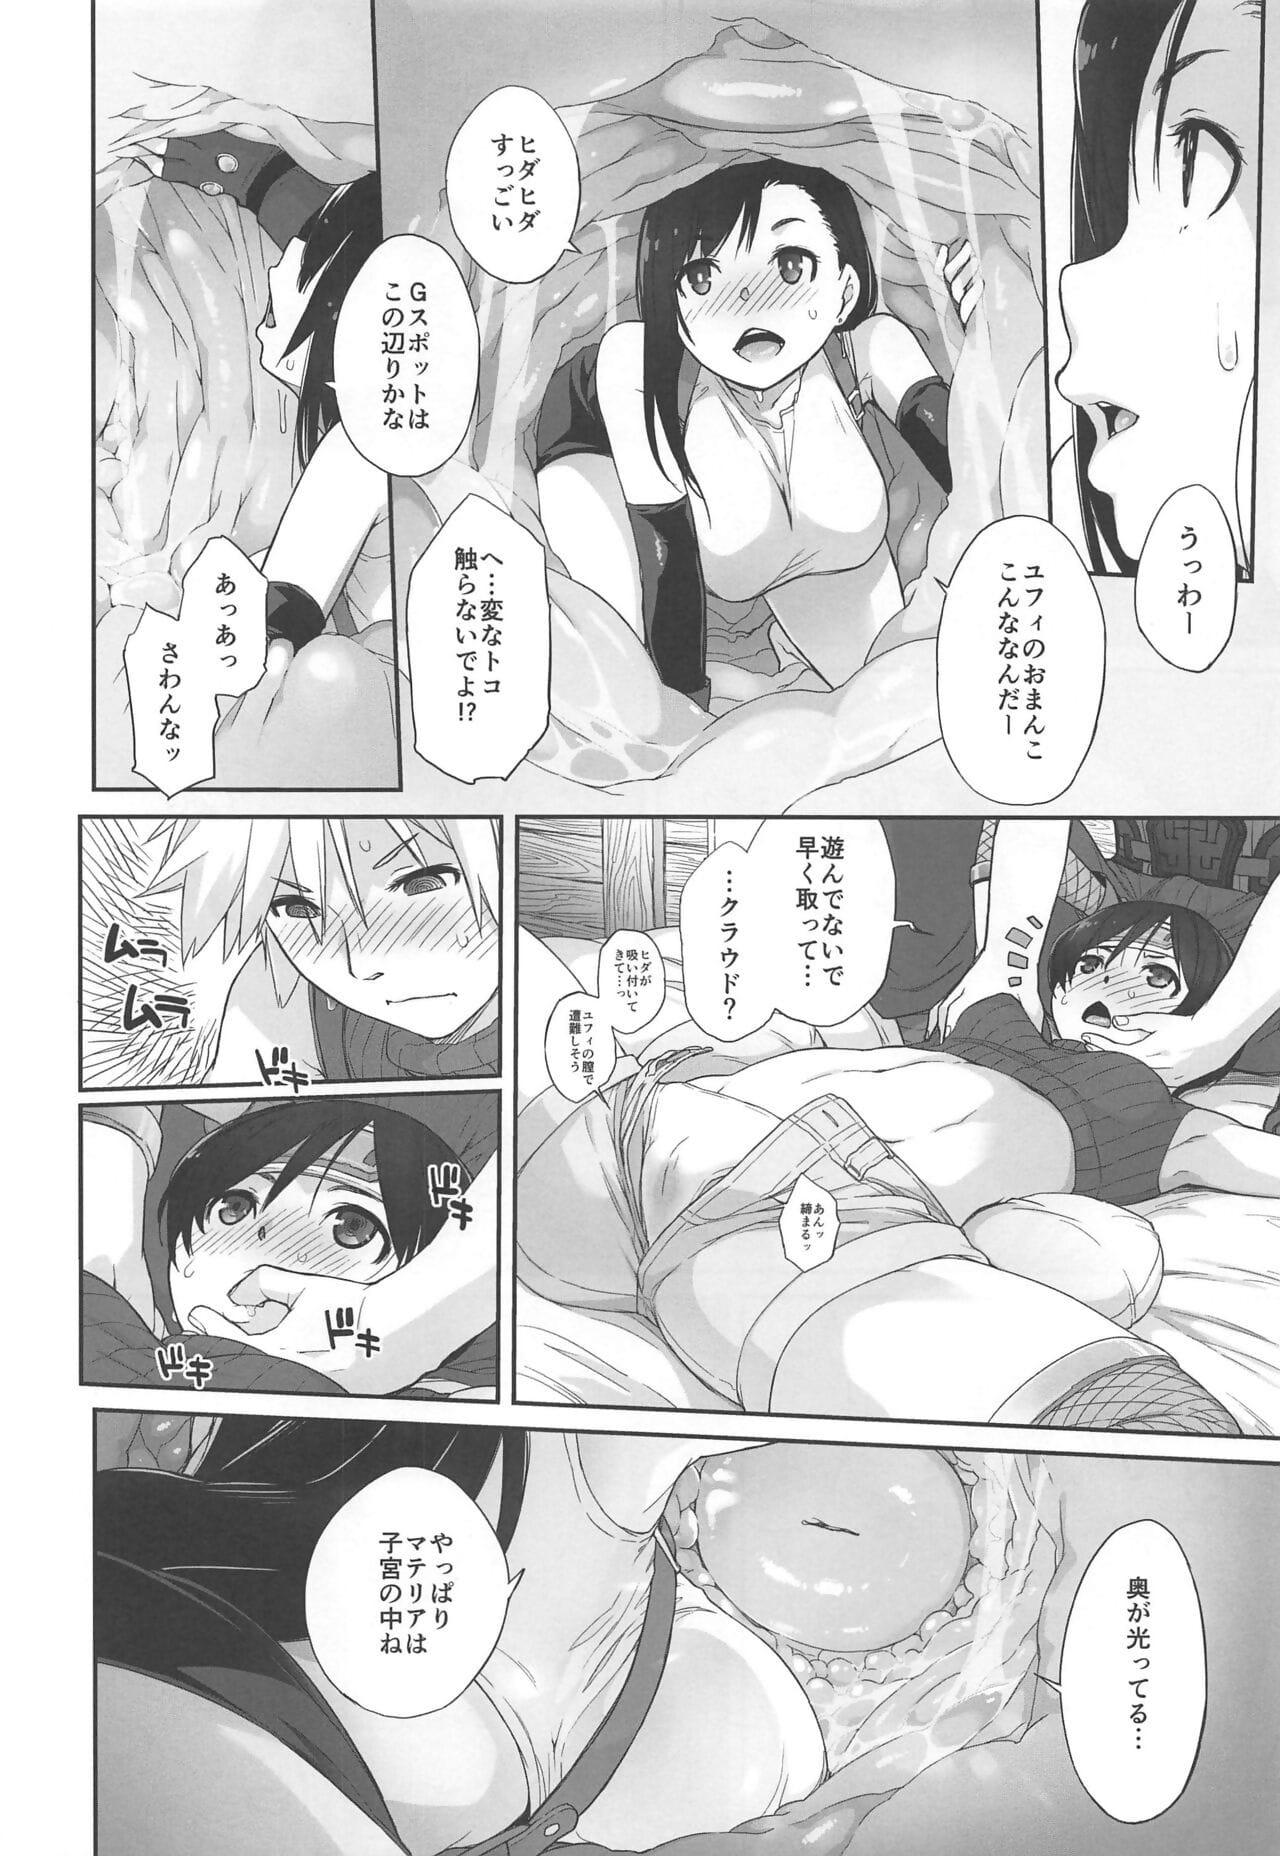 マテリア X 女の子 #2 tifa no 最小 daisakusen! page 1